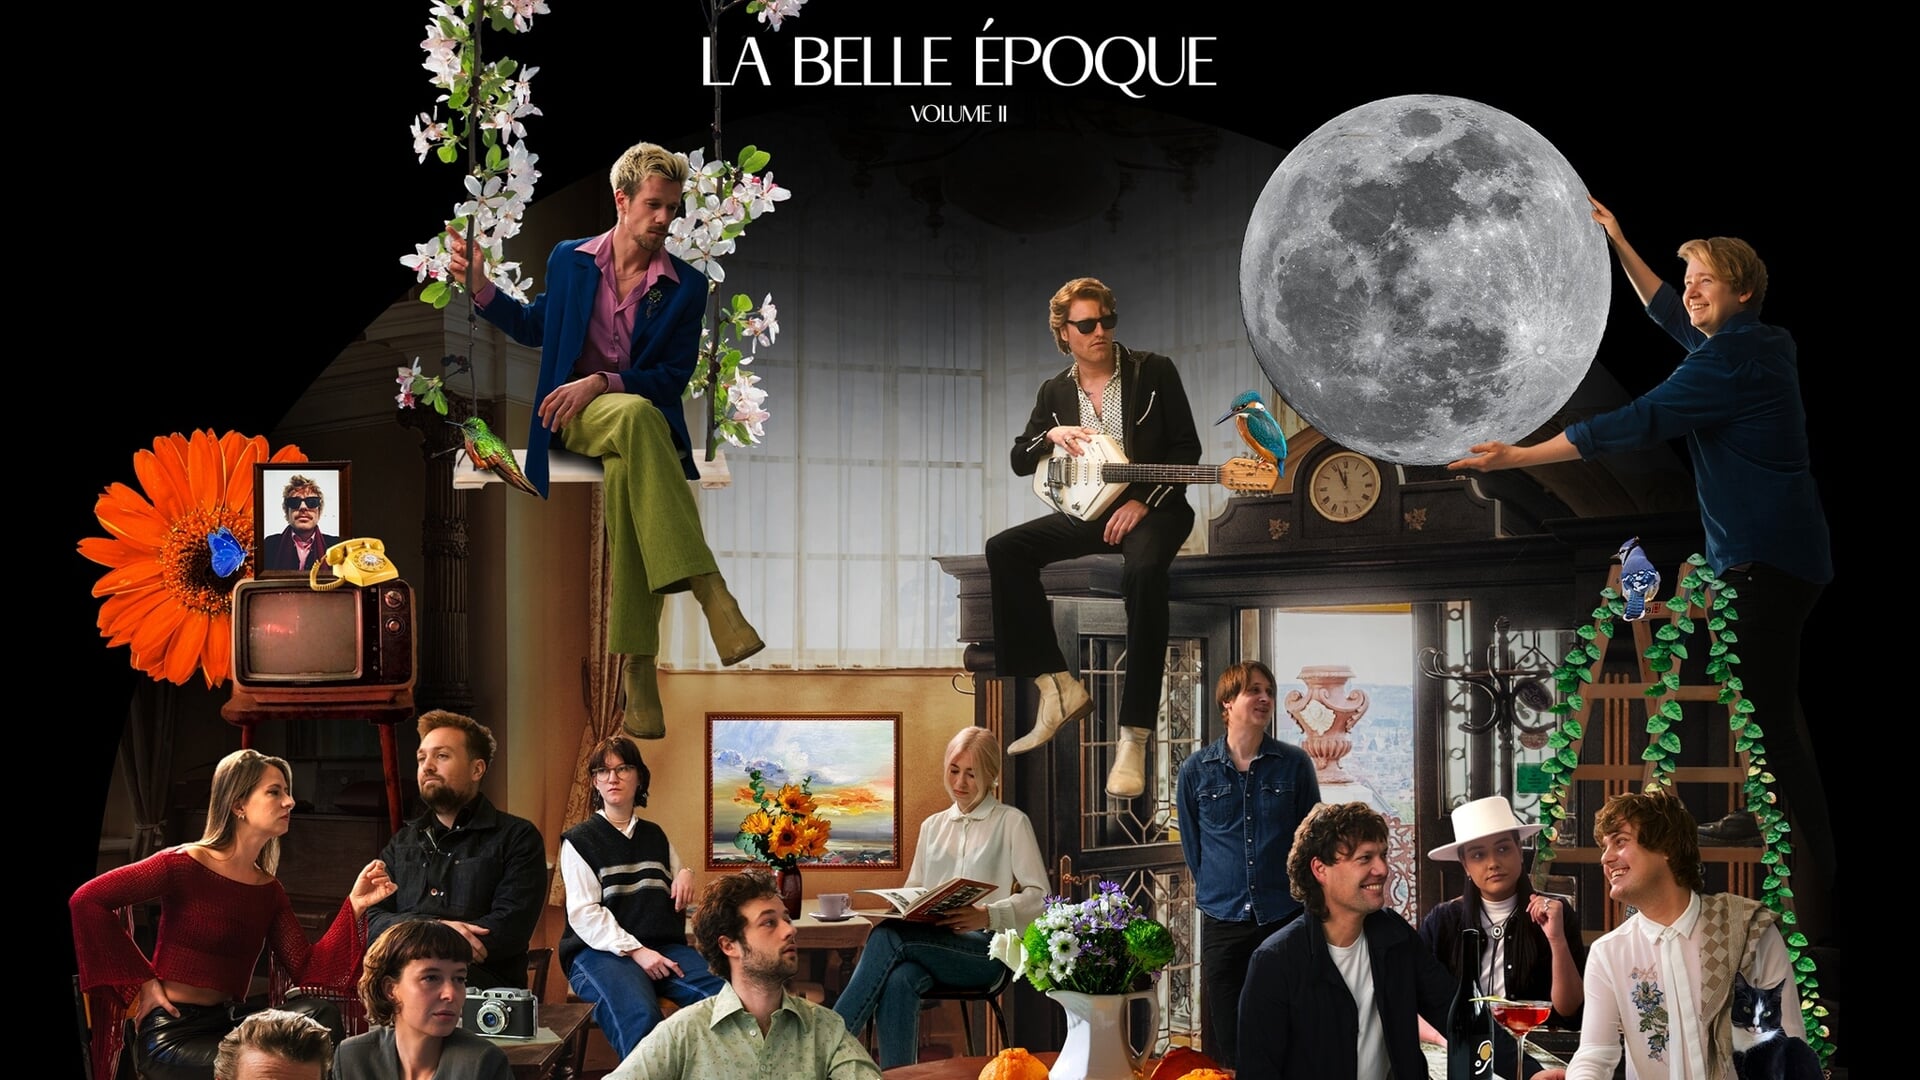 De hoes van La Belle Epoque Volume II, met alle gastzangers/-zangeressen bij elkaar. Rechtsboven als 'moonchild' Tom Broshuis. Hoesontwerp Liz Olijslager